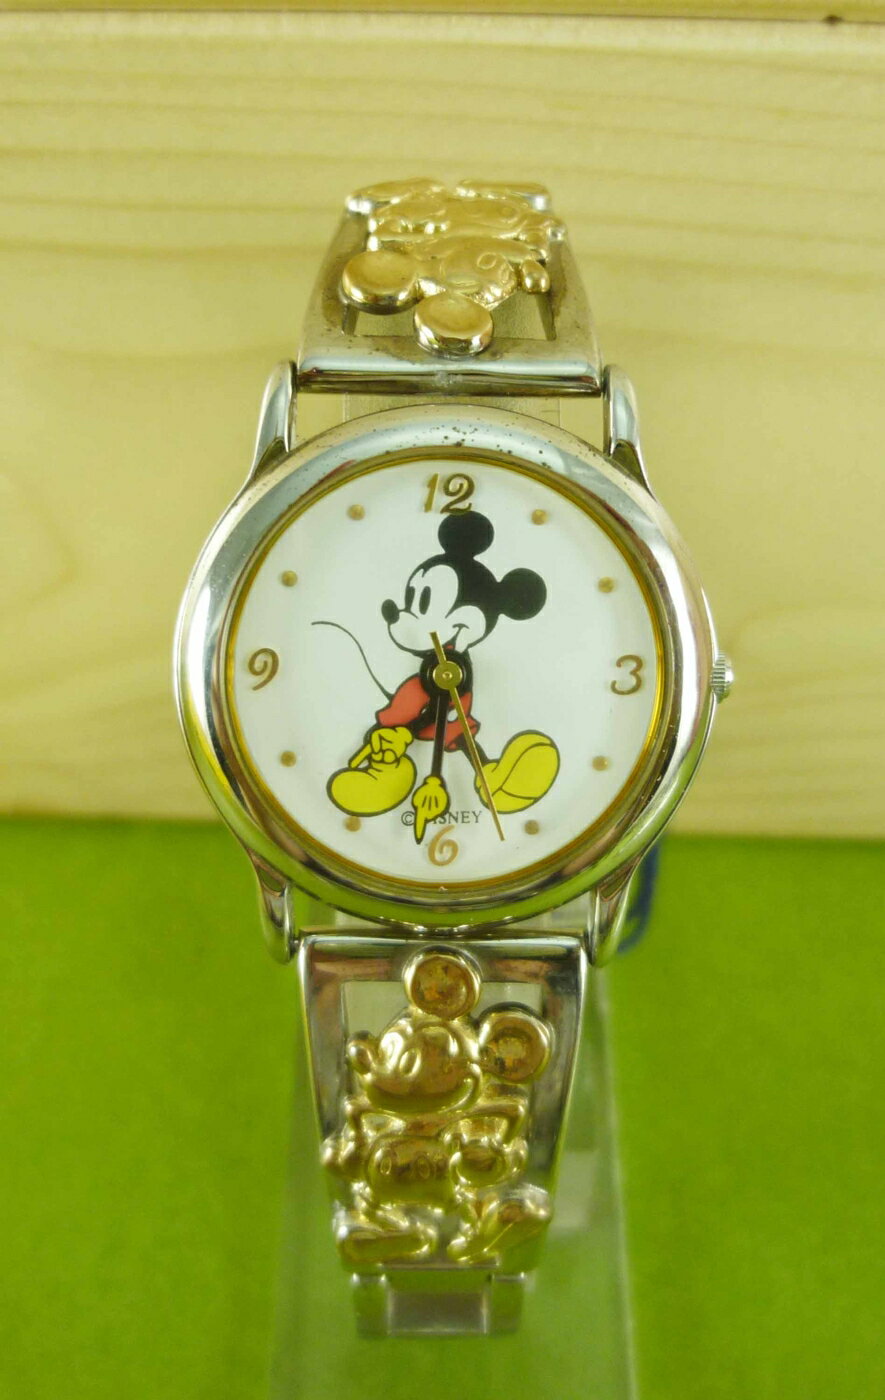 【震撼精品百貨】米奇/米妮 Micky Mouse 手錶-銀走路#22903 震撼日式精品百貨